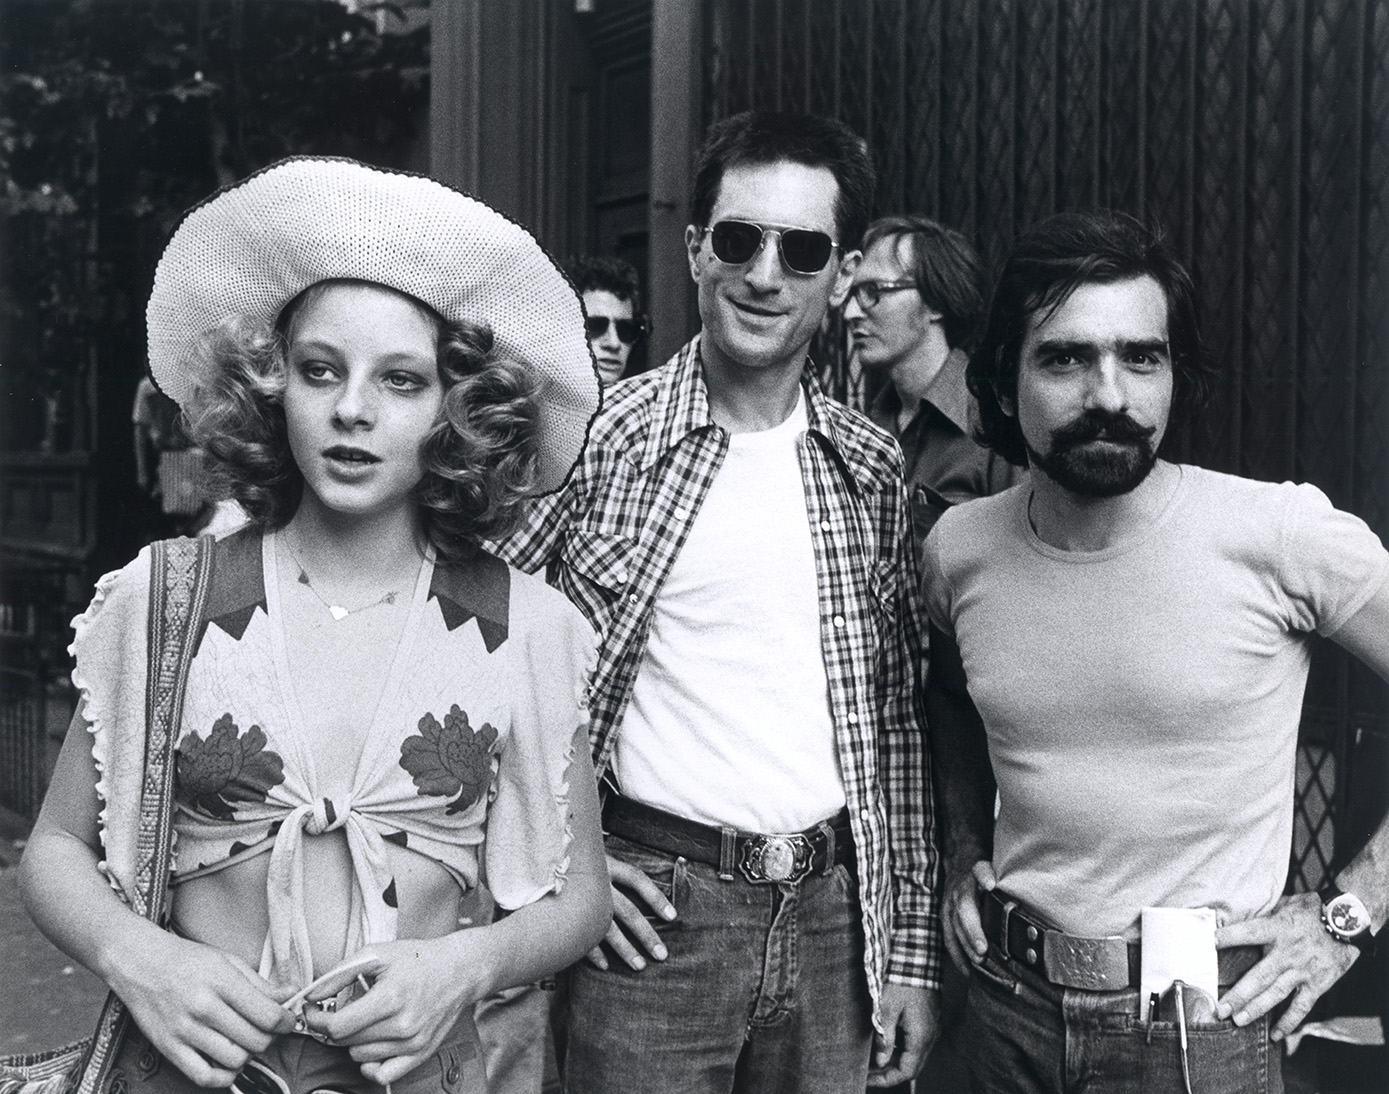 Jodie Foster, Robert De Niro e/and Martin Scorsese, Taxi Driver, 1976. Martin Scorsese Collection, New York.